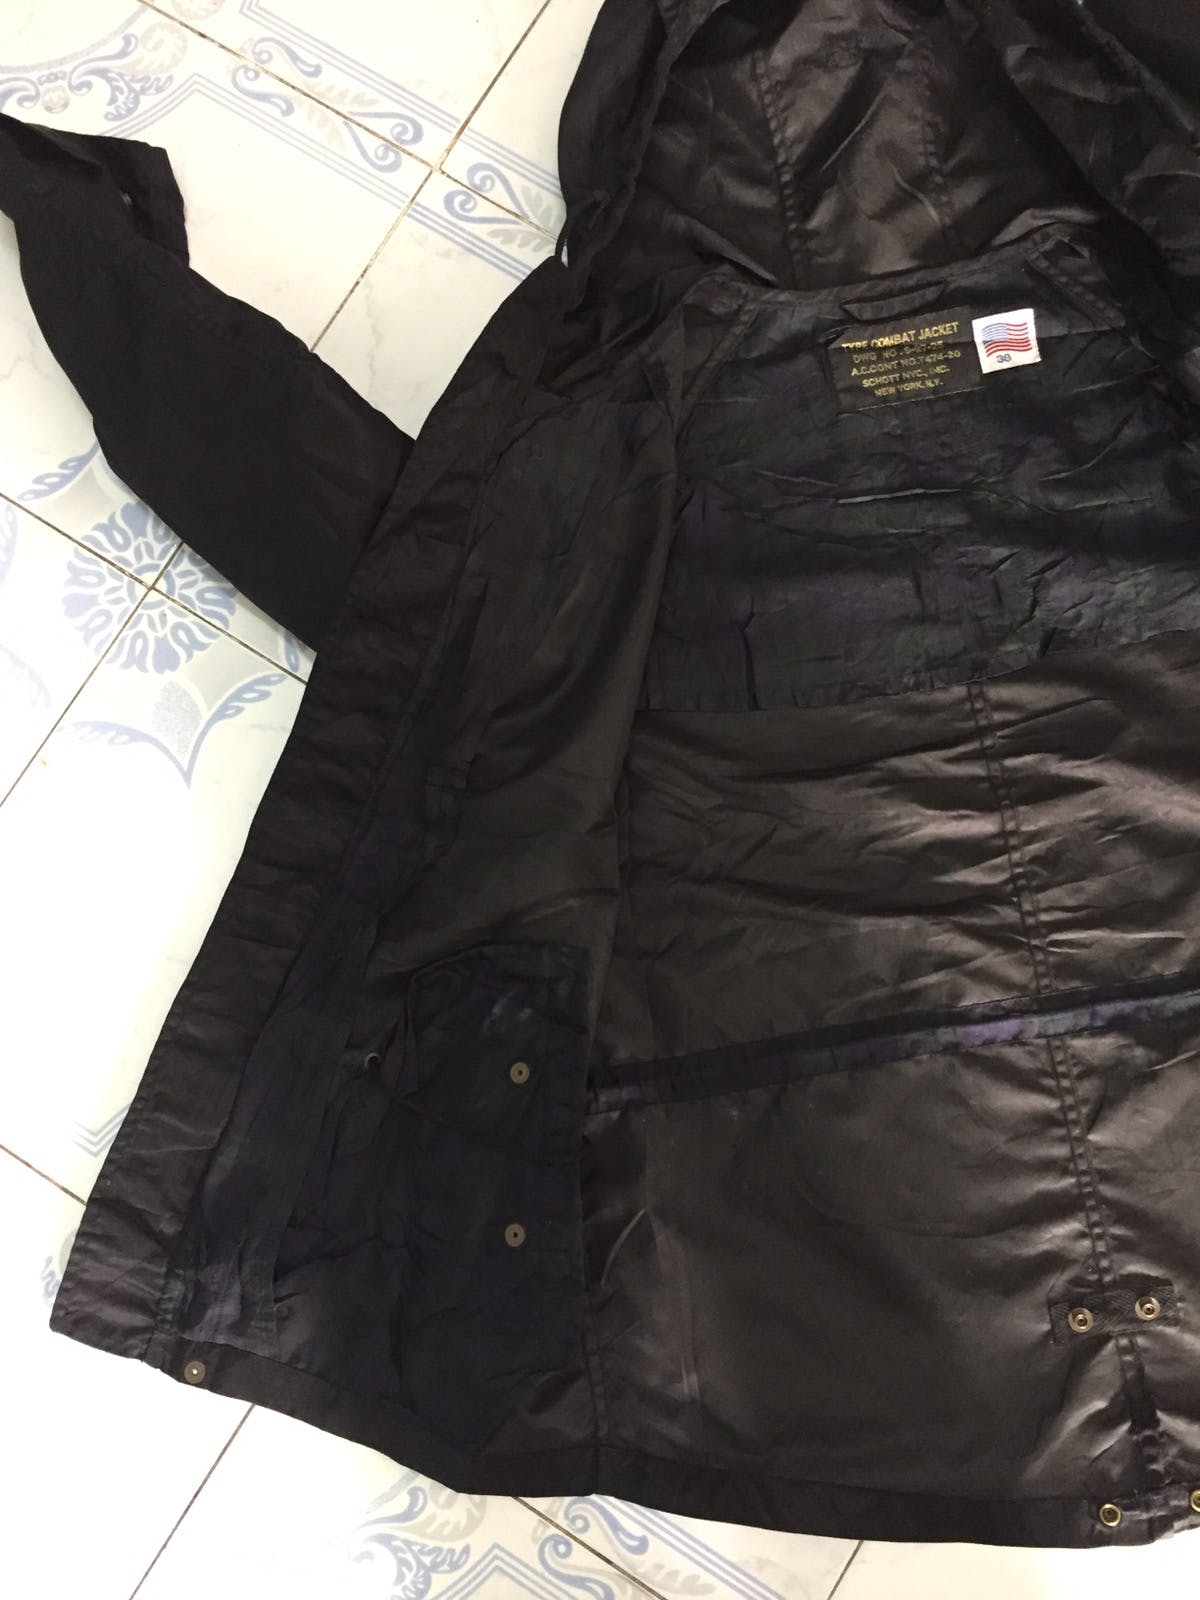 Nylon Schott combat type jacket cap hoodie - 17